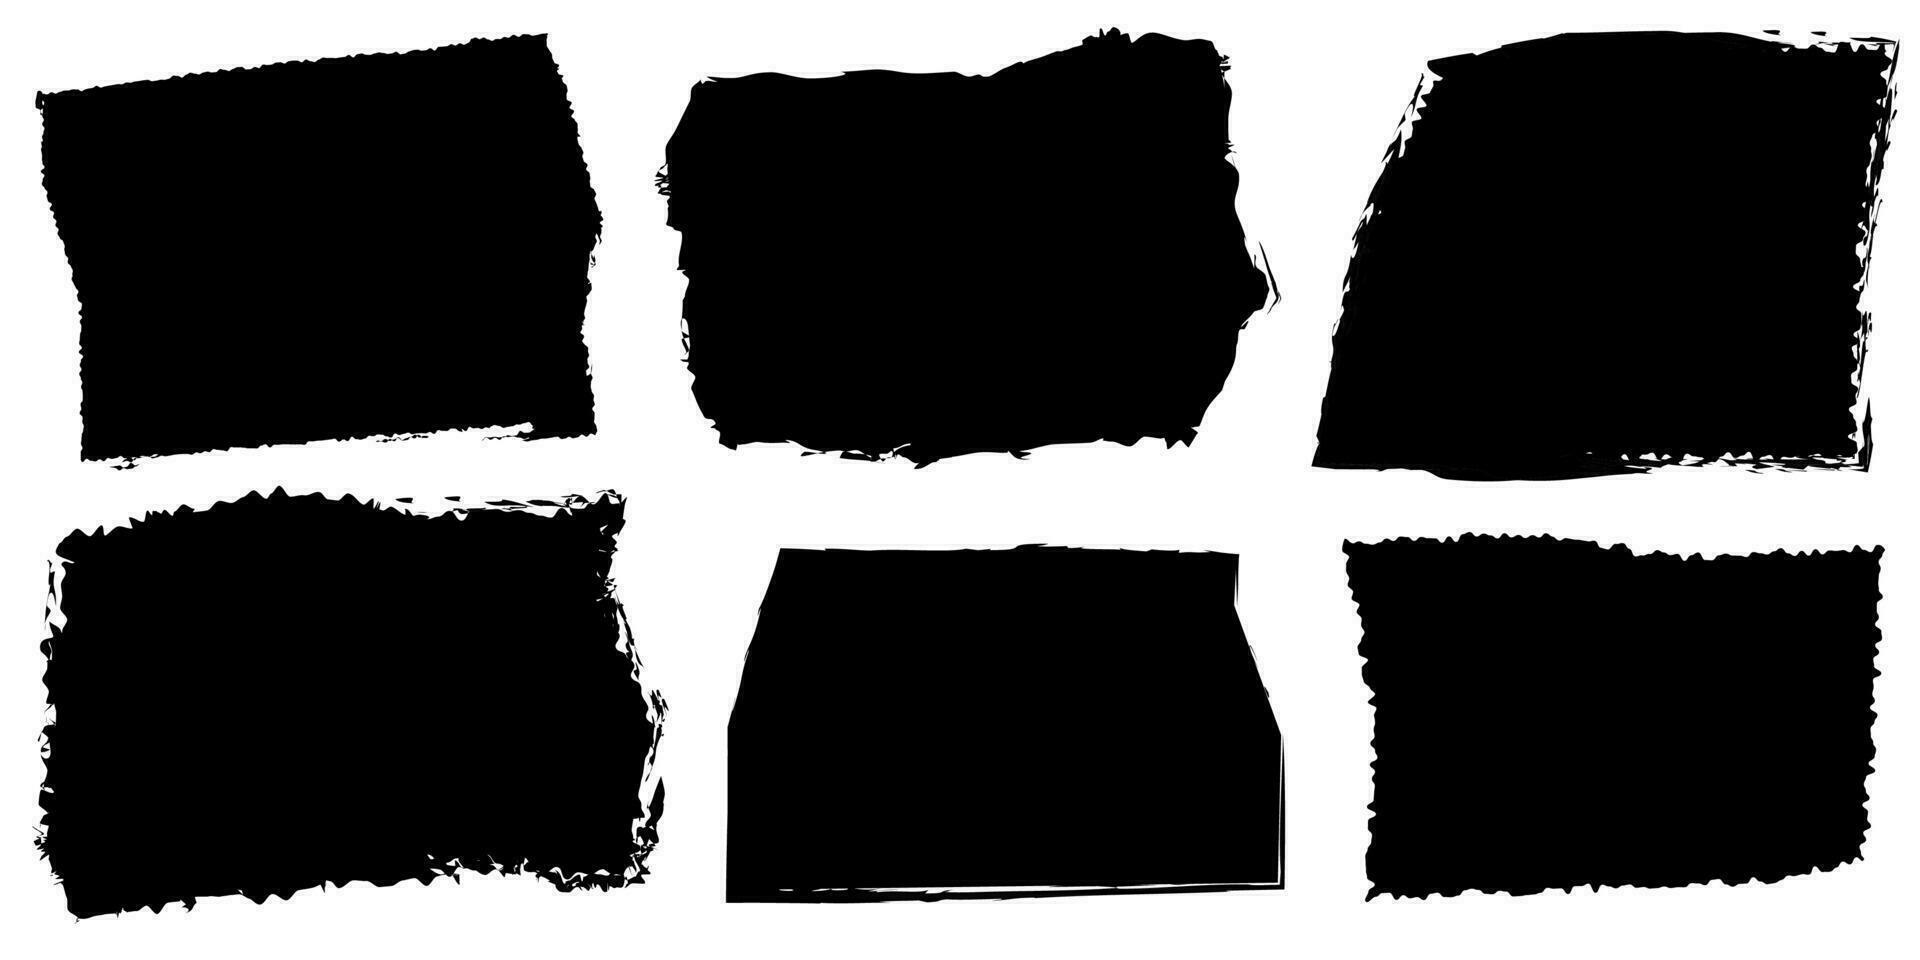 einstellen von zerrissen Papier Rahmen. gestalten von schwarz zerrissen Papiere Silhouetten auf Weiß Hintergrund. vektor